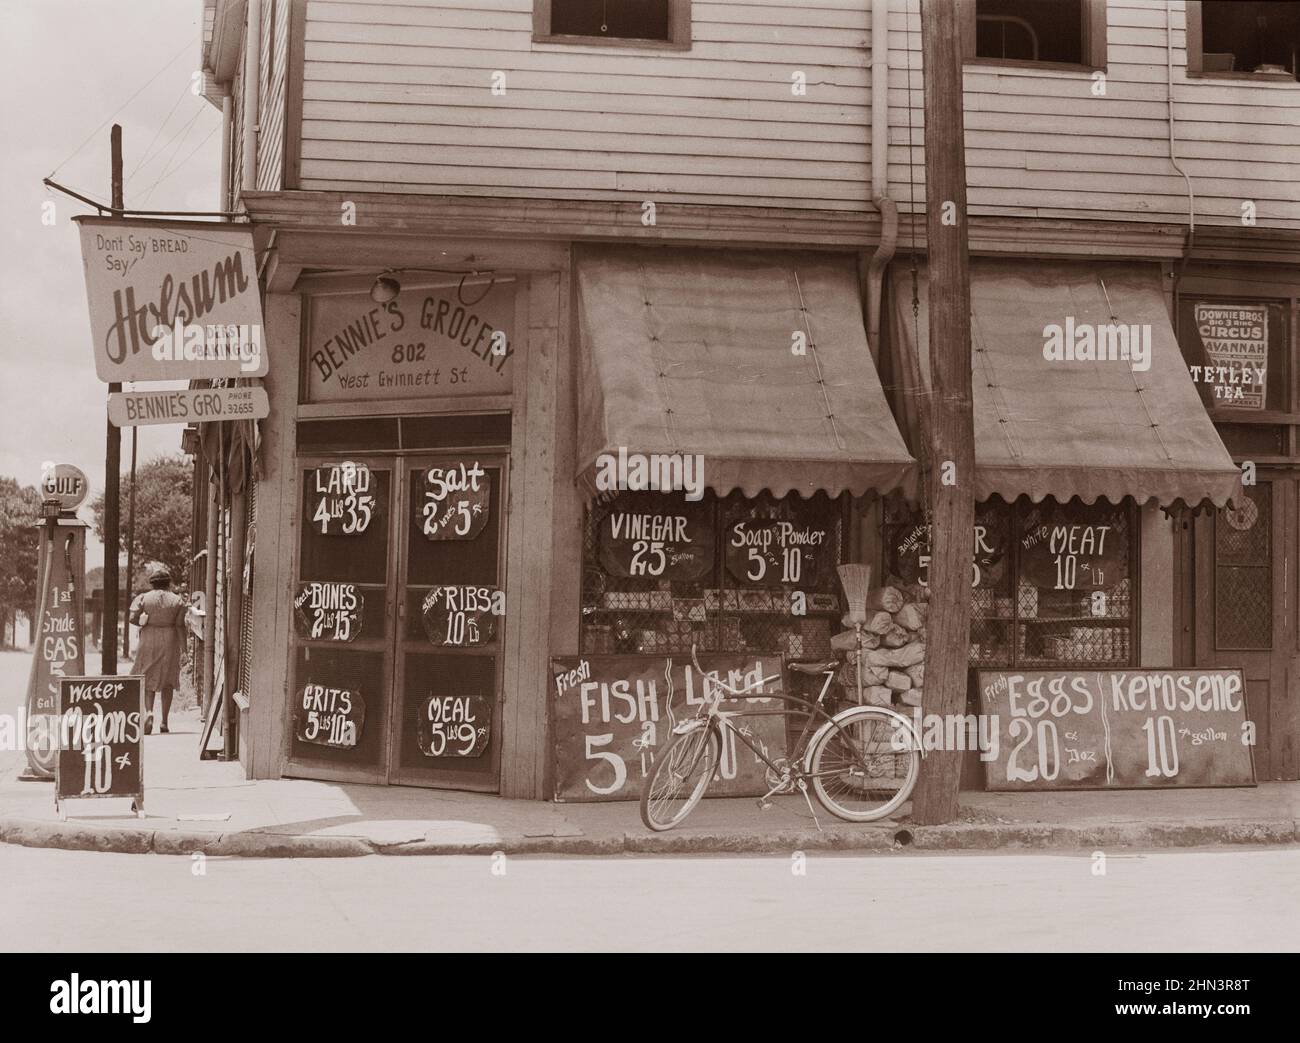 Vintage-Foto von afroamerikanischem Lebensmittelgeschäft. Sylvania, Georgia. Die Preise sind im Internet veröffentlicht. Juni 1939 von Marion Post Wolcott, Fotografin Stockfoto